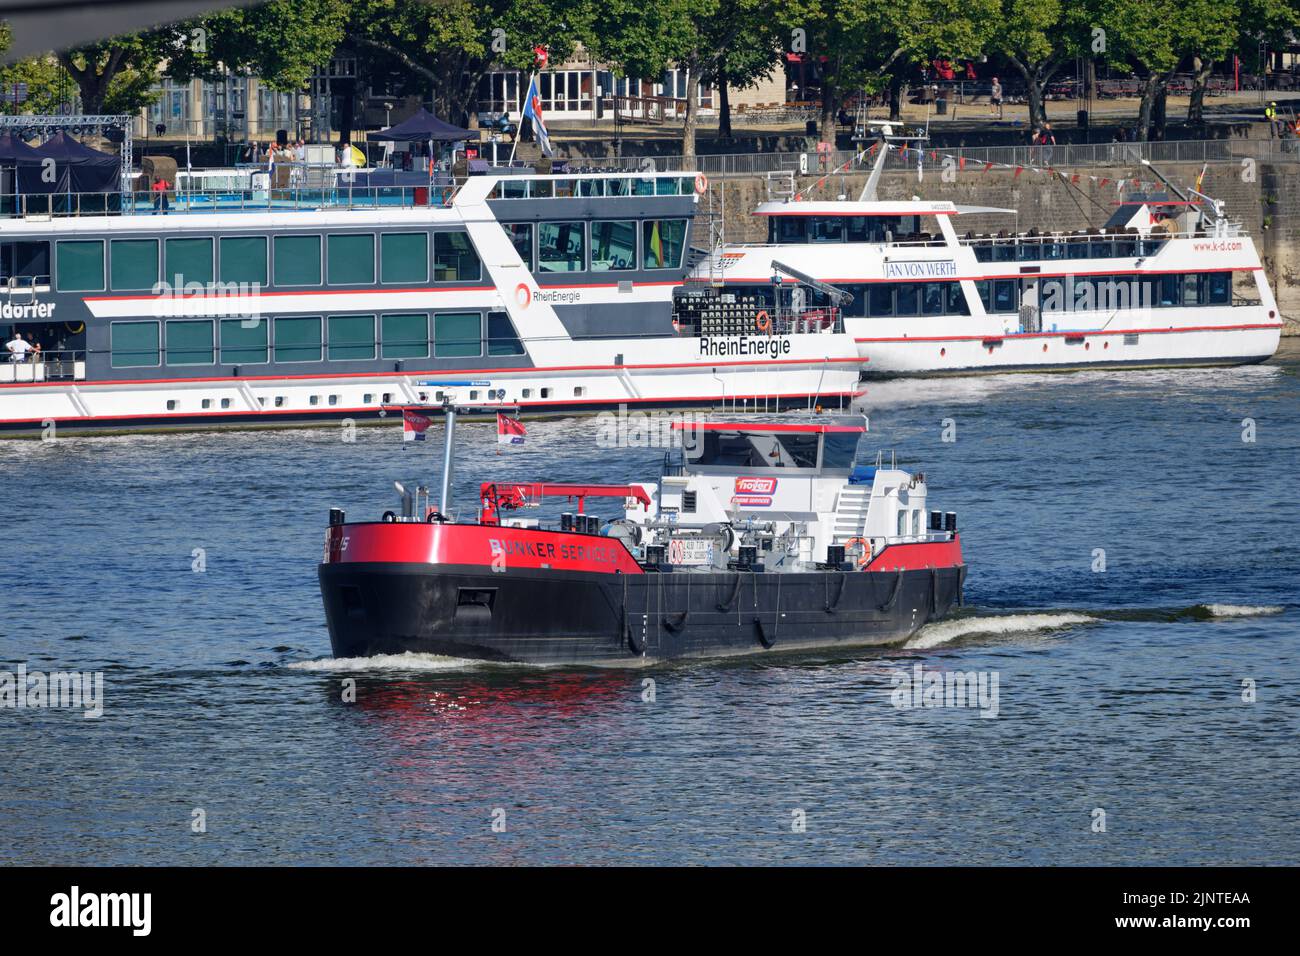 Cologne, Allemagne 10 août 2022: Passage du service de bunker 15 sur le rhin à cologne devant les bateaux d'excursion Banque D'Images